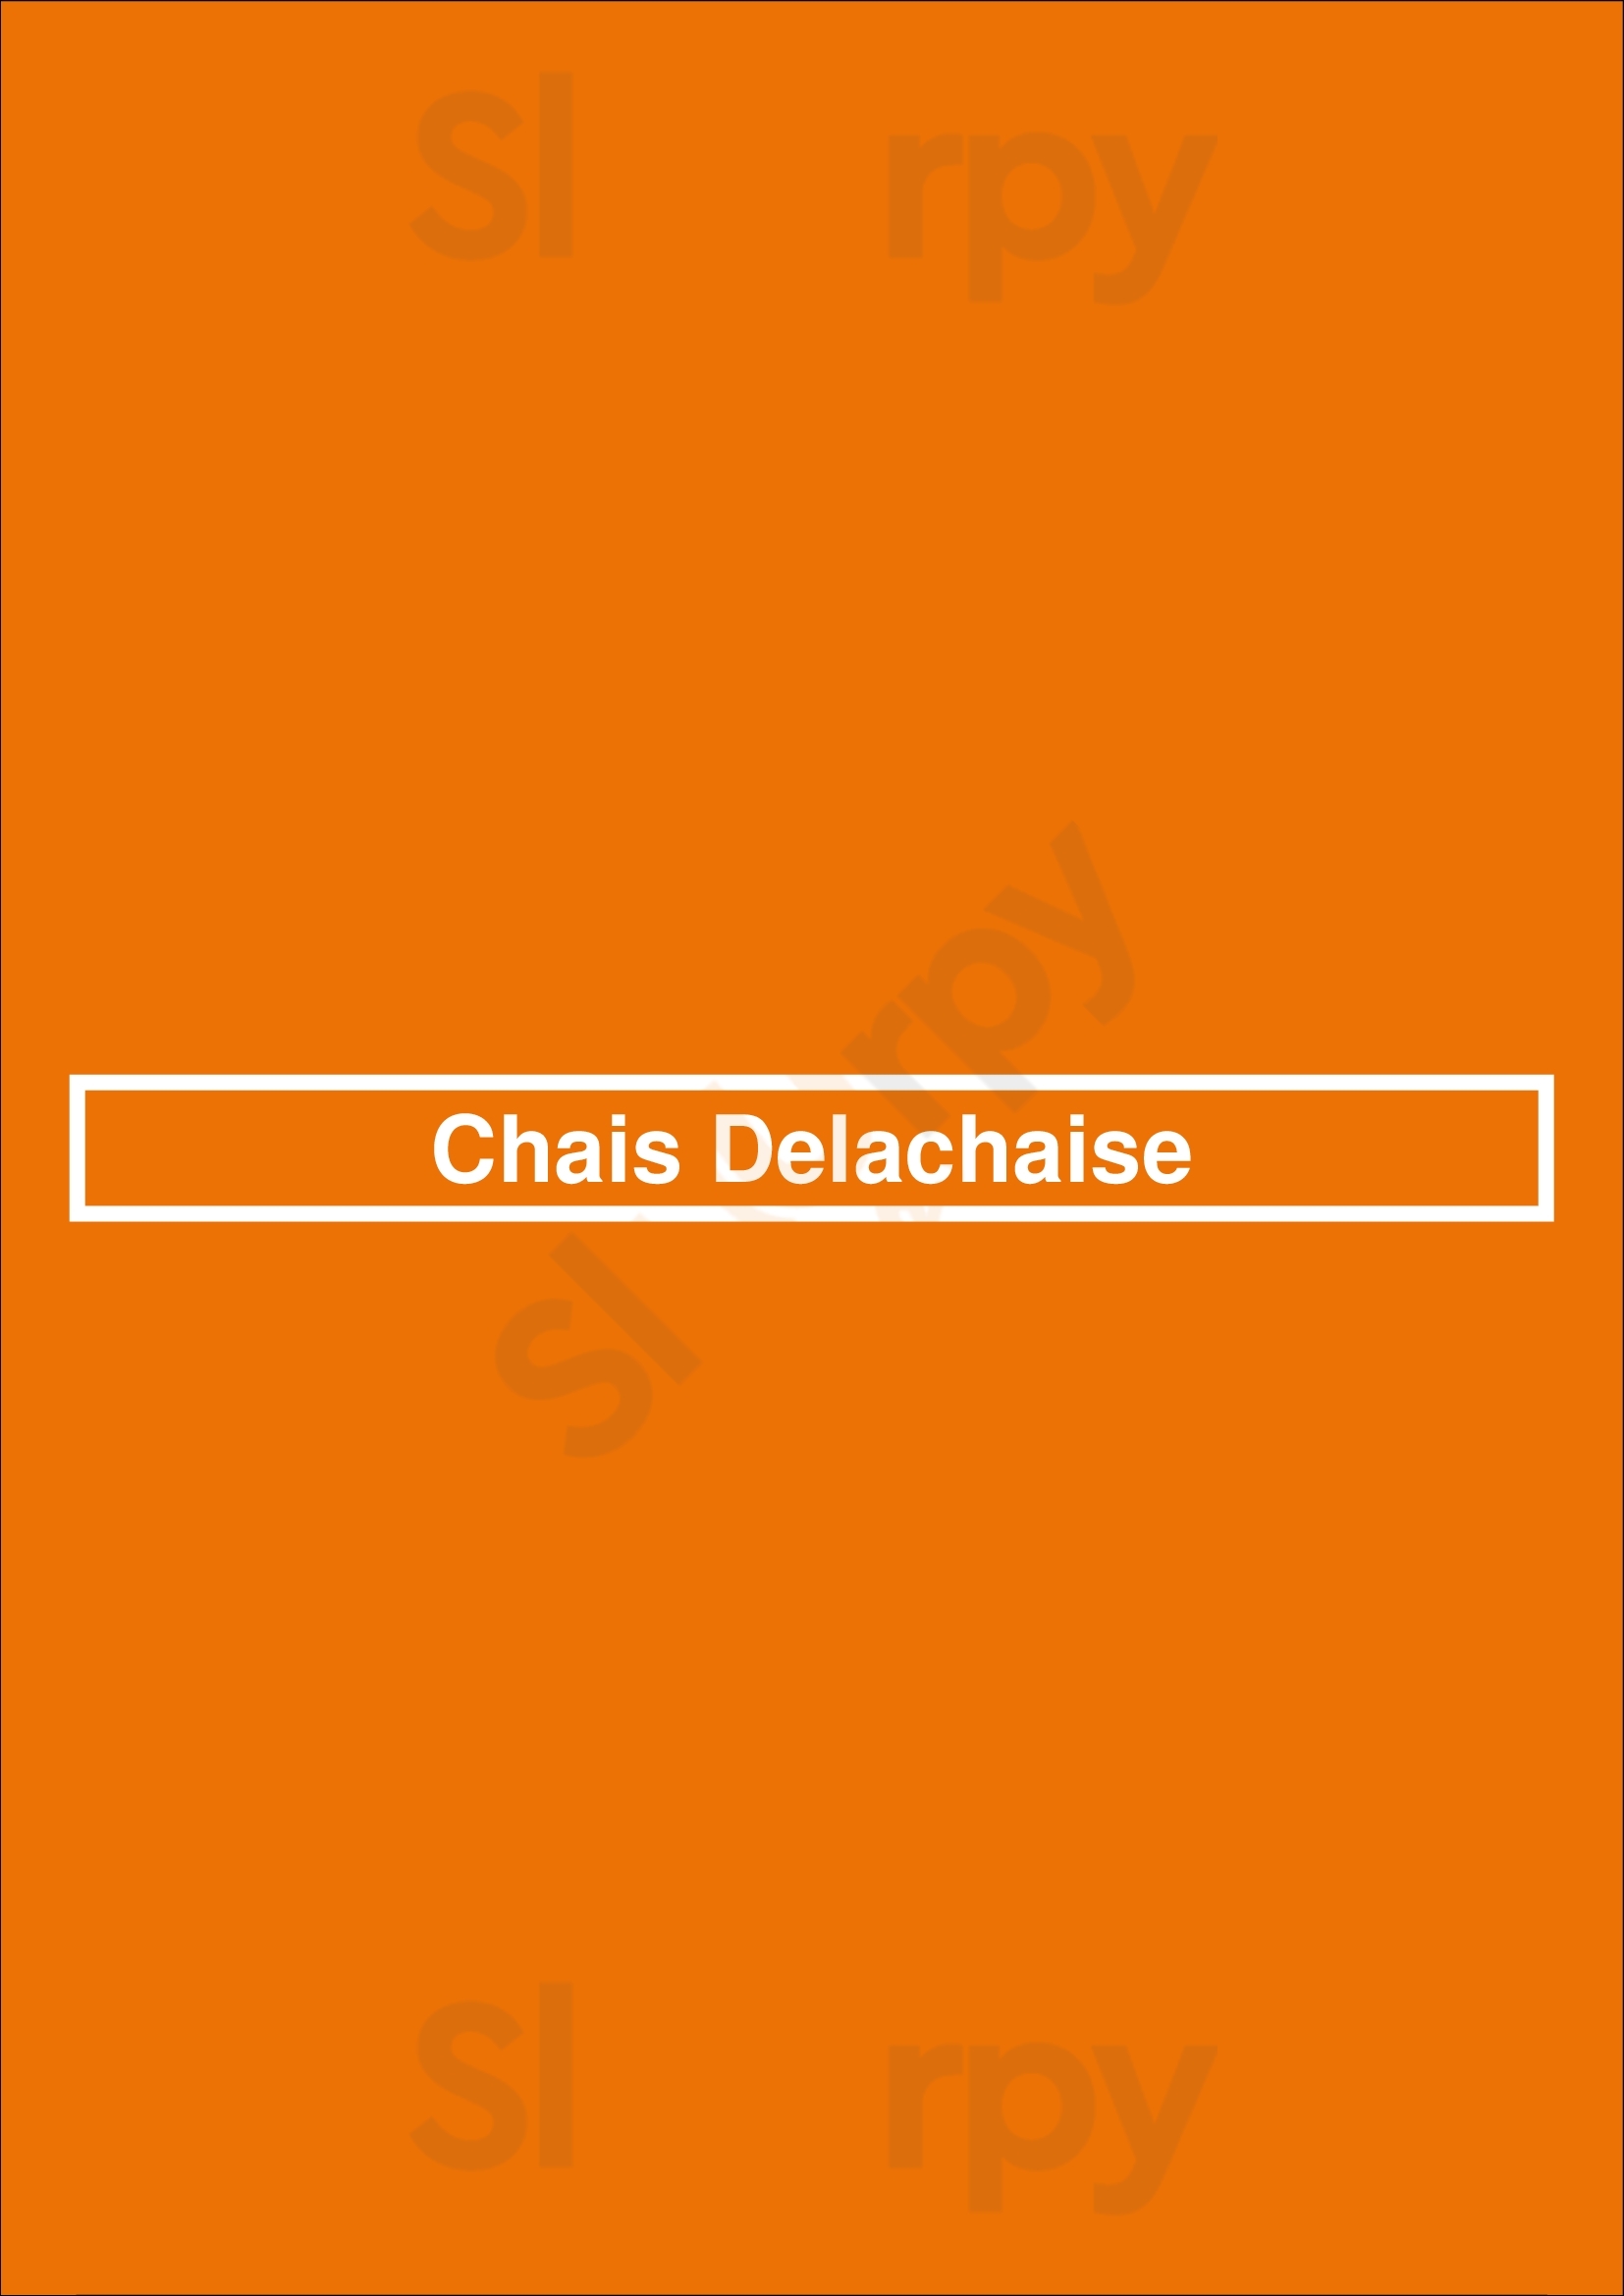 Chais Delachaise New Orleans Menu - 1